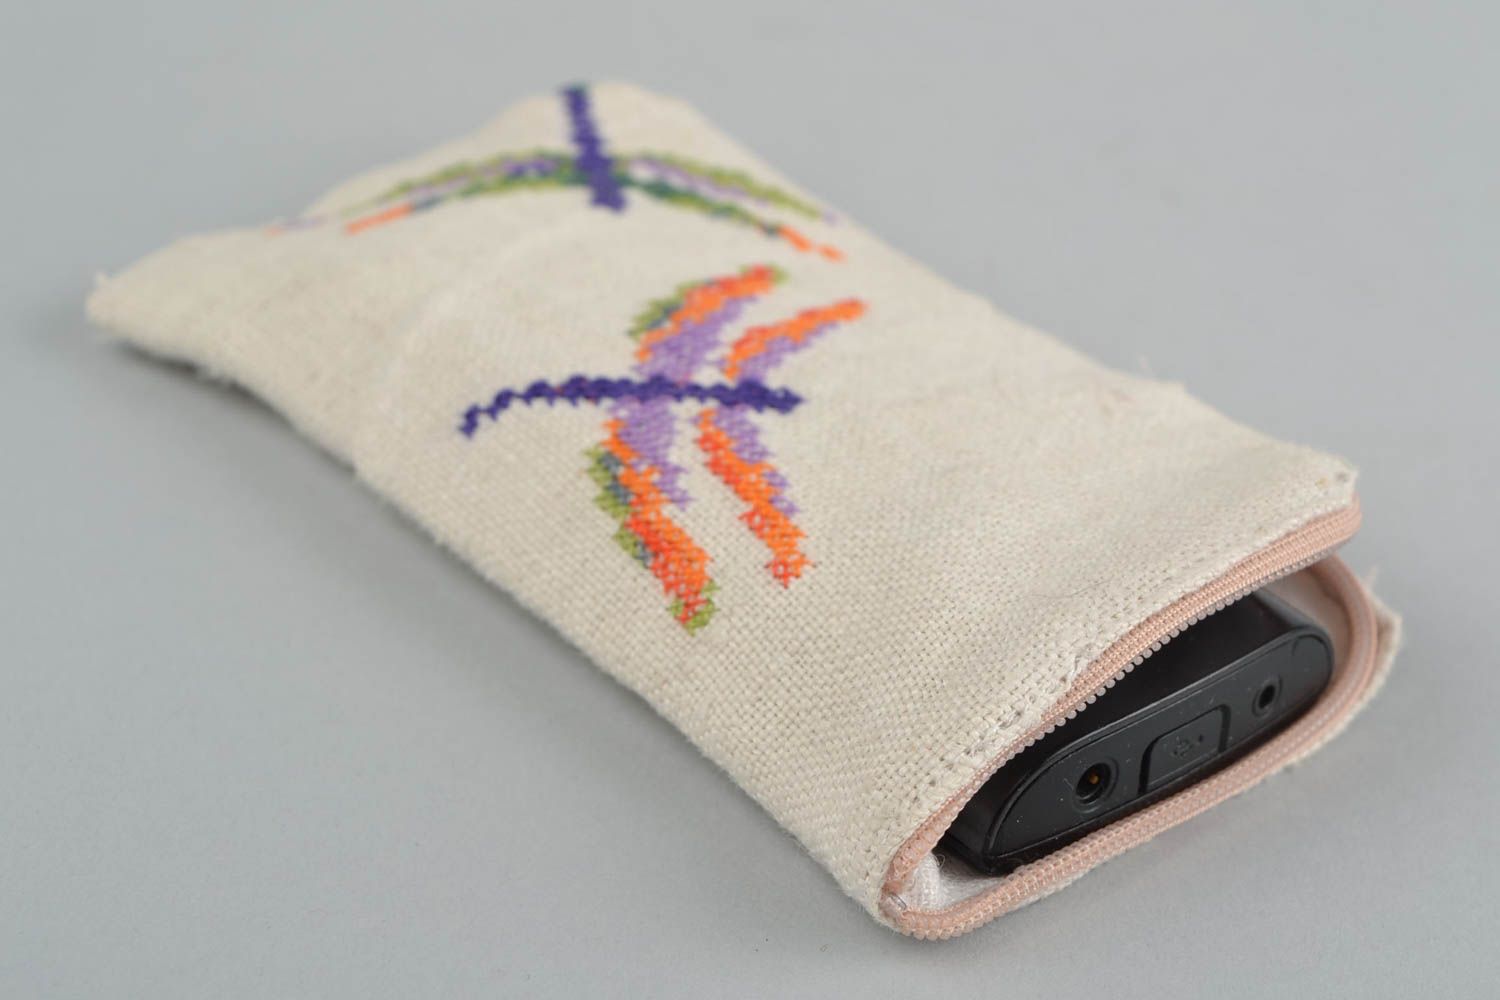 Текстильный чехол для мобильного телефона ручной работы с вышивкой крестиком фото 1